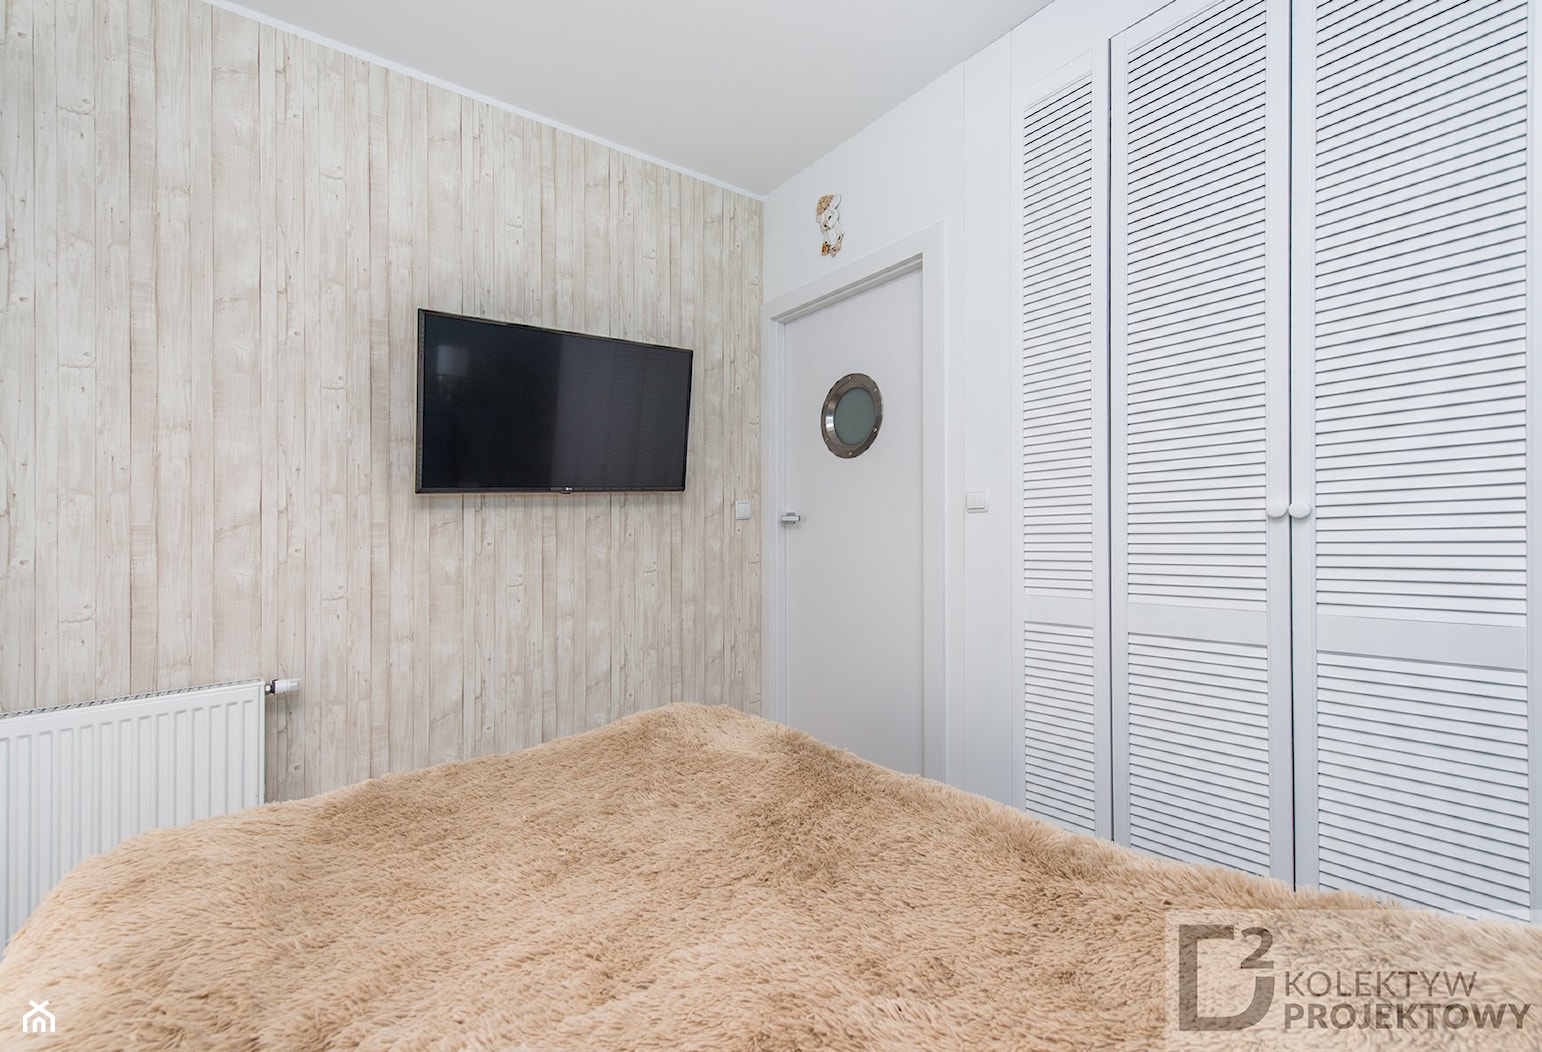 Turkusowe mieszkanie wakacyjne nad morzem - Średnia biała sypialnia, styl nowoczesny - zdjęcie od Kolektyw D2 - Homebook